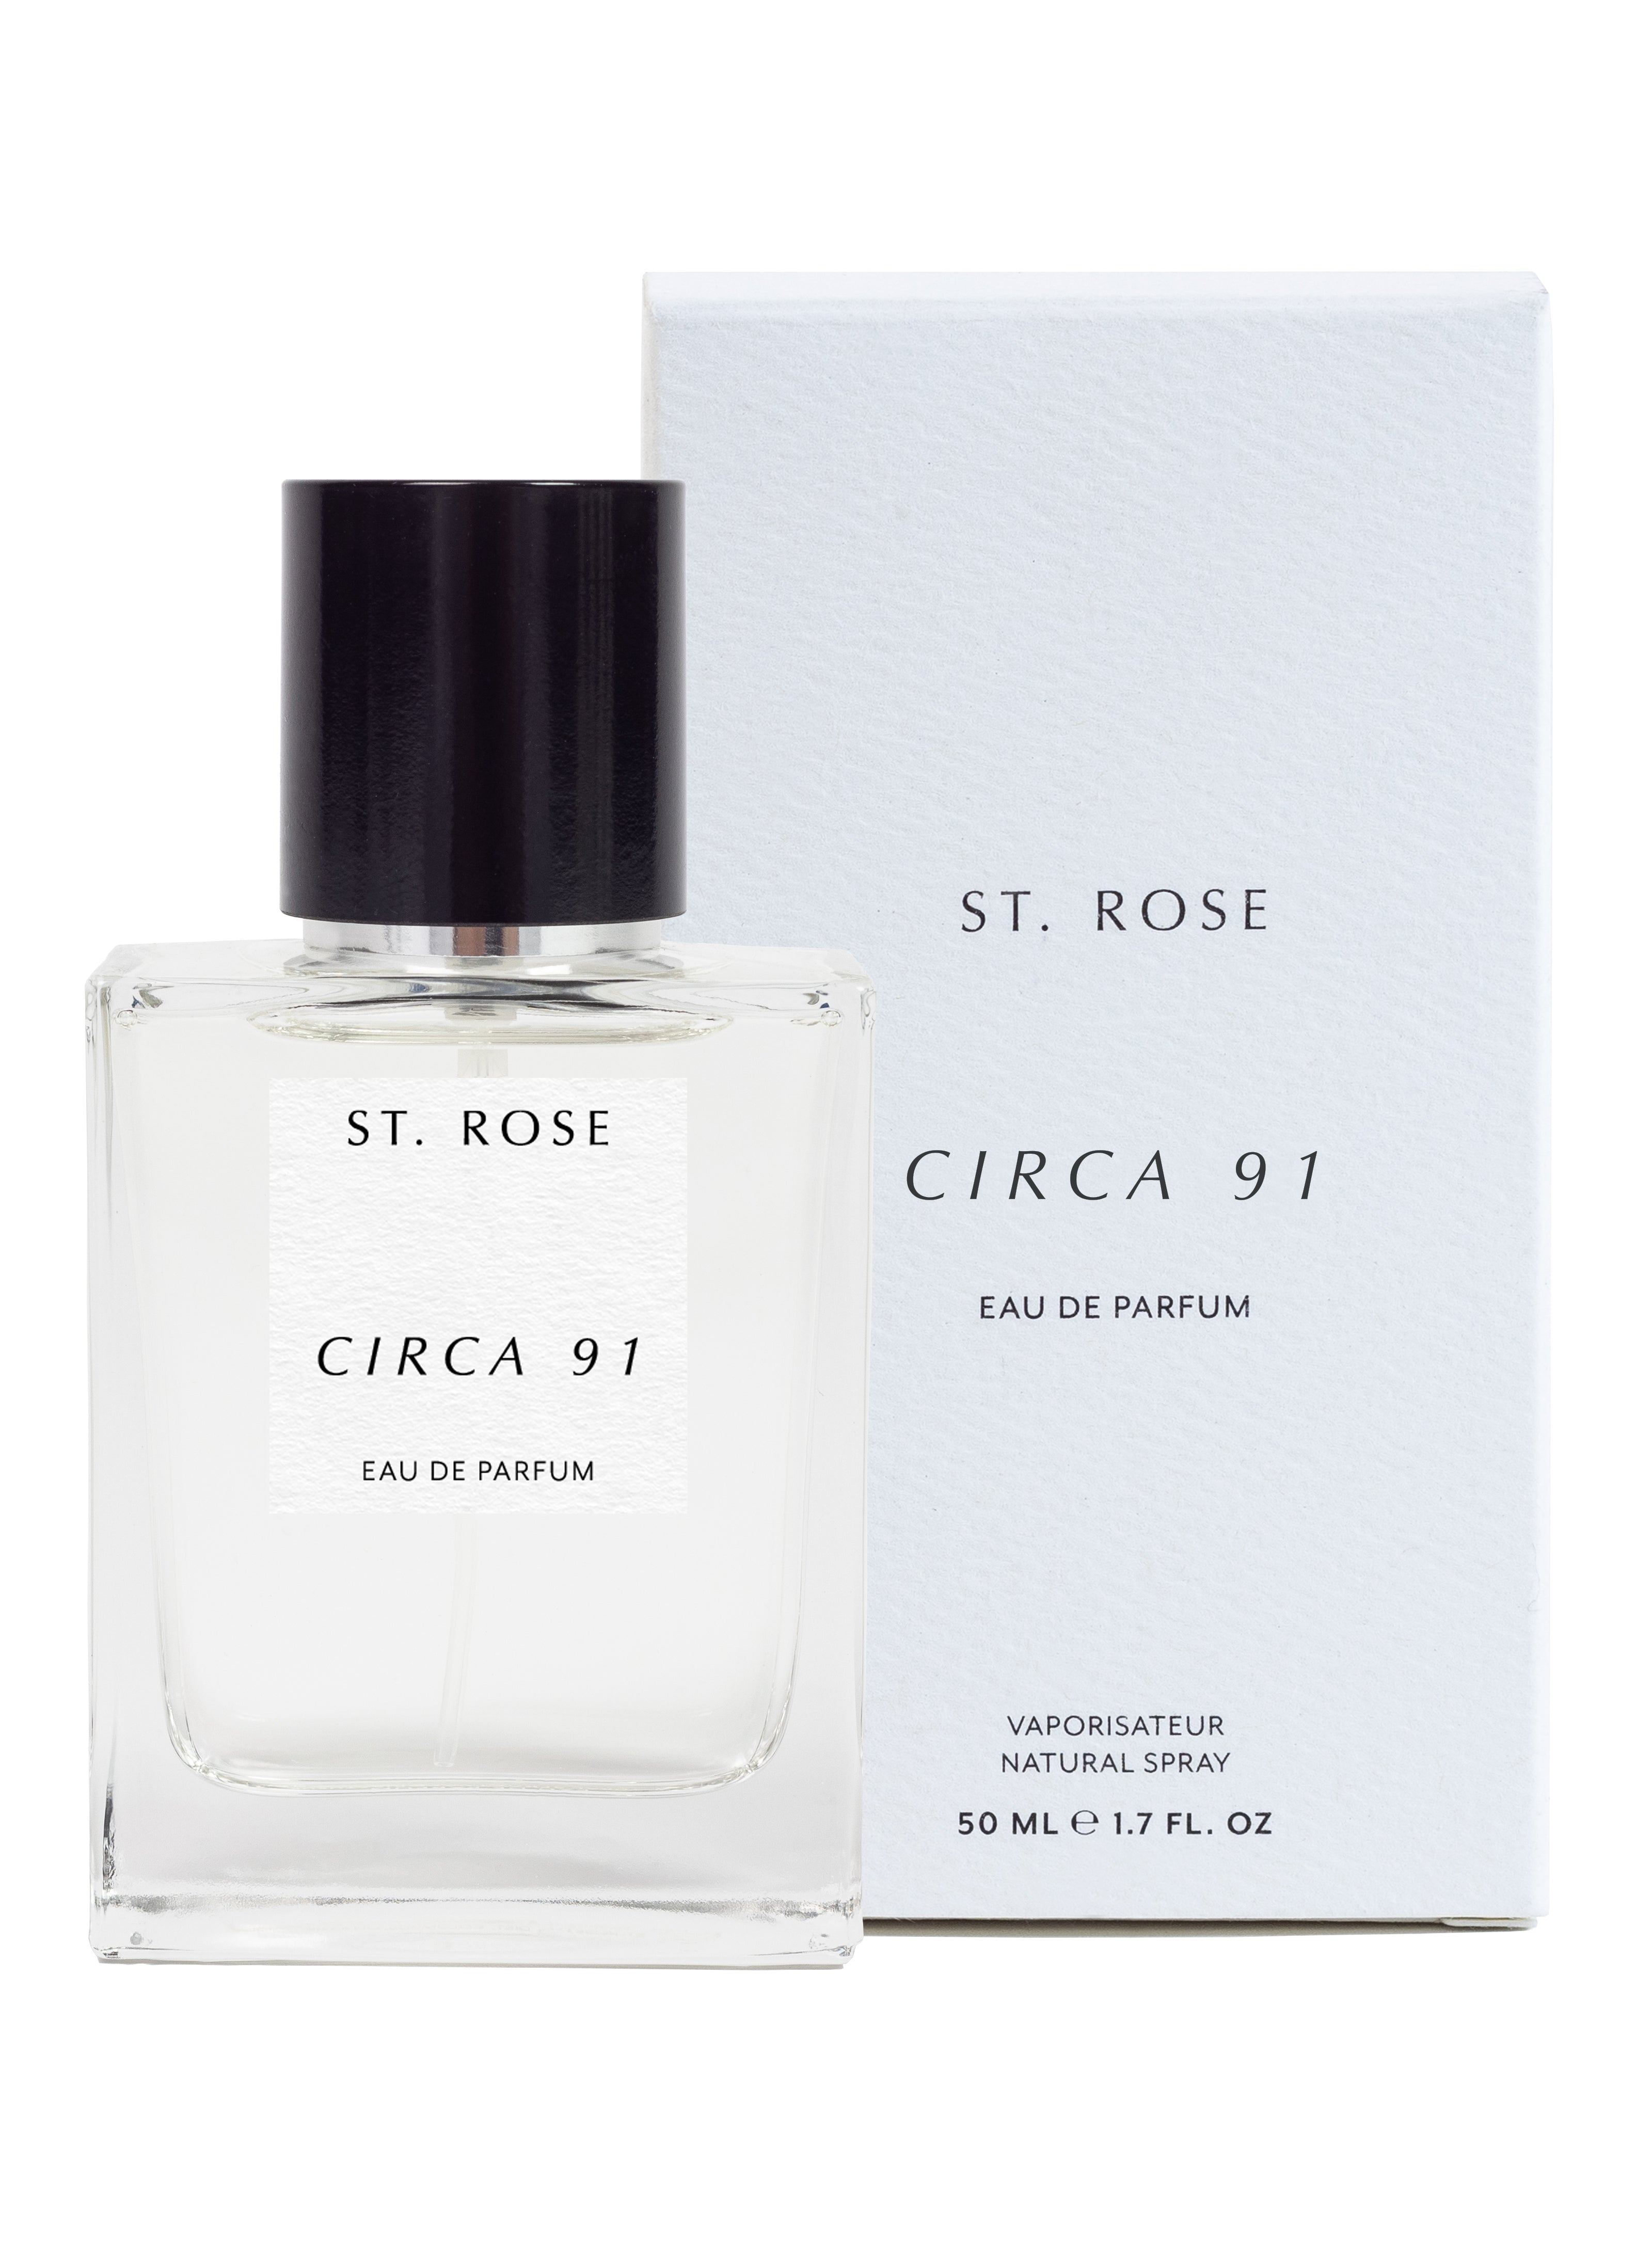 St. Rose Circa 91 Eau de Parfum - Stèle